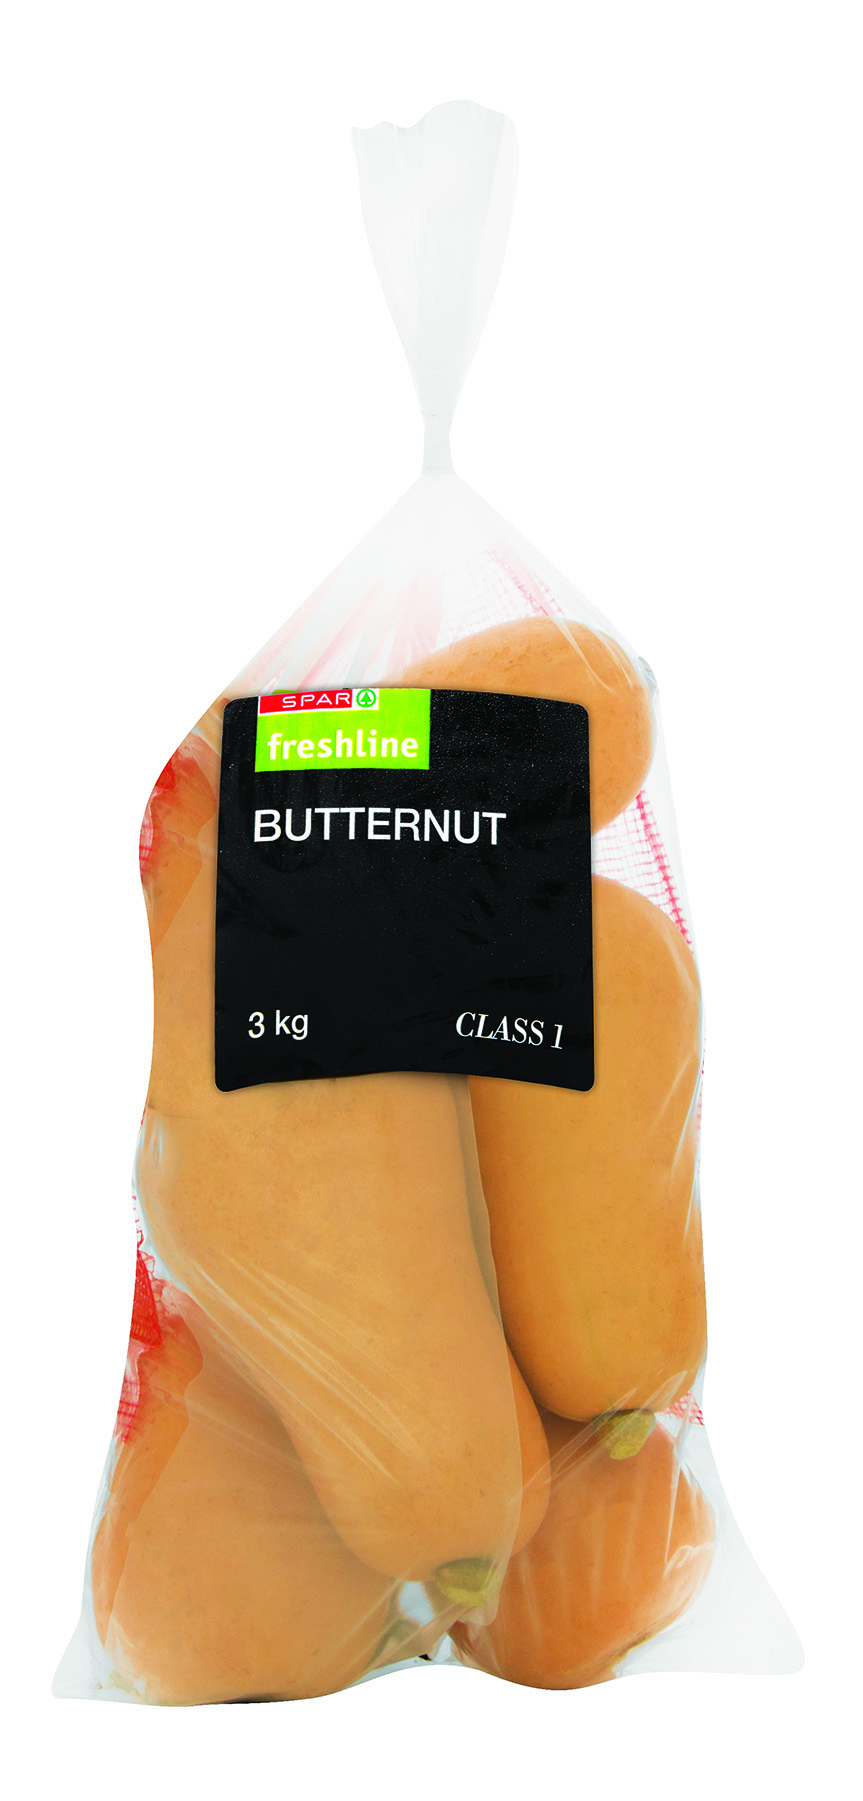 freshline butternut